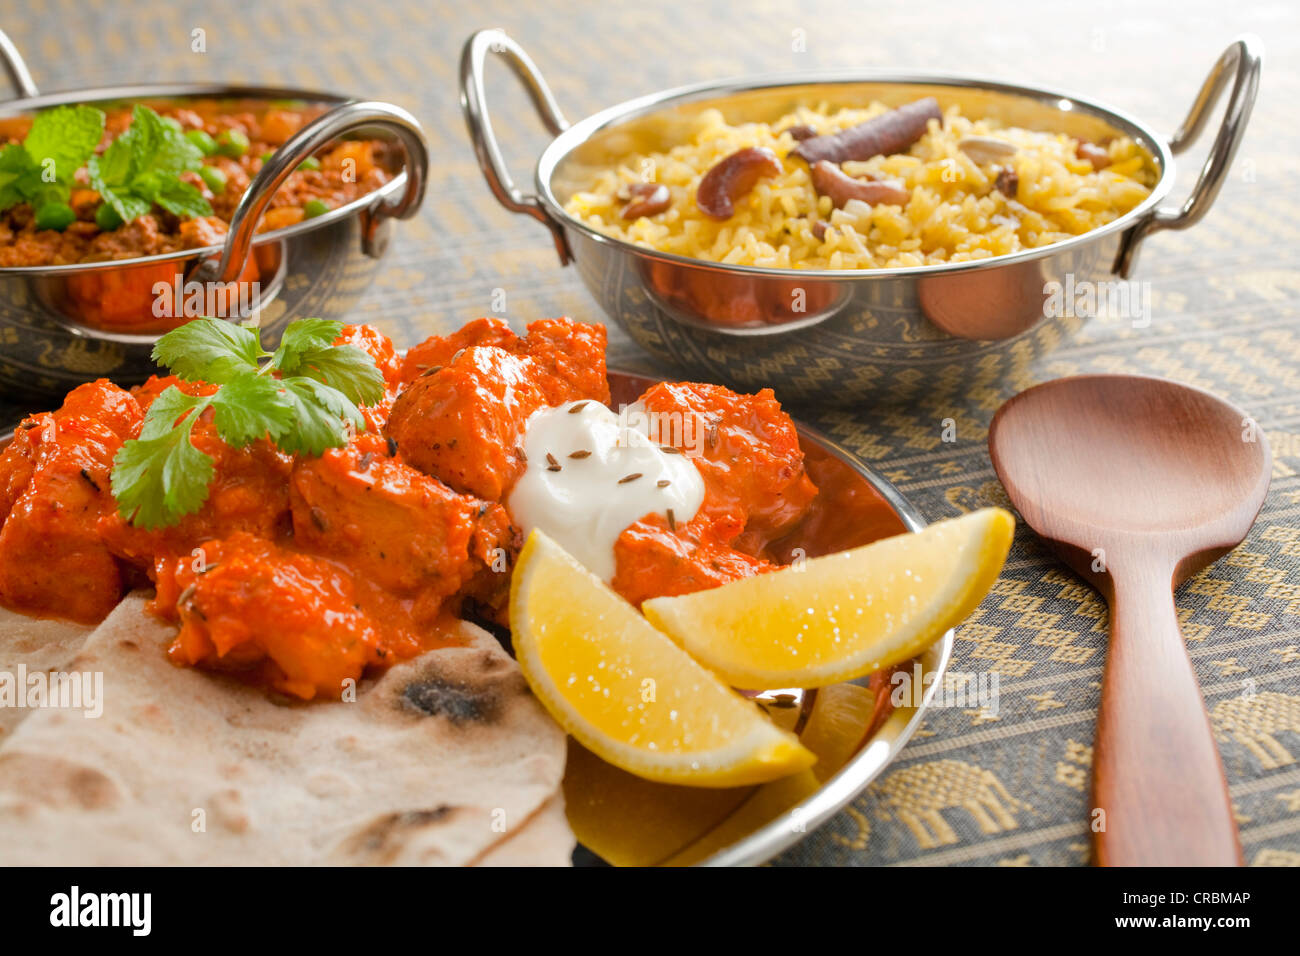 Une sélection de plats indiens, y compris le poulet tikka masala avec chapati, riz pilaf et keema matar (viande hachée avec pois). Banque D'Images